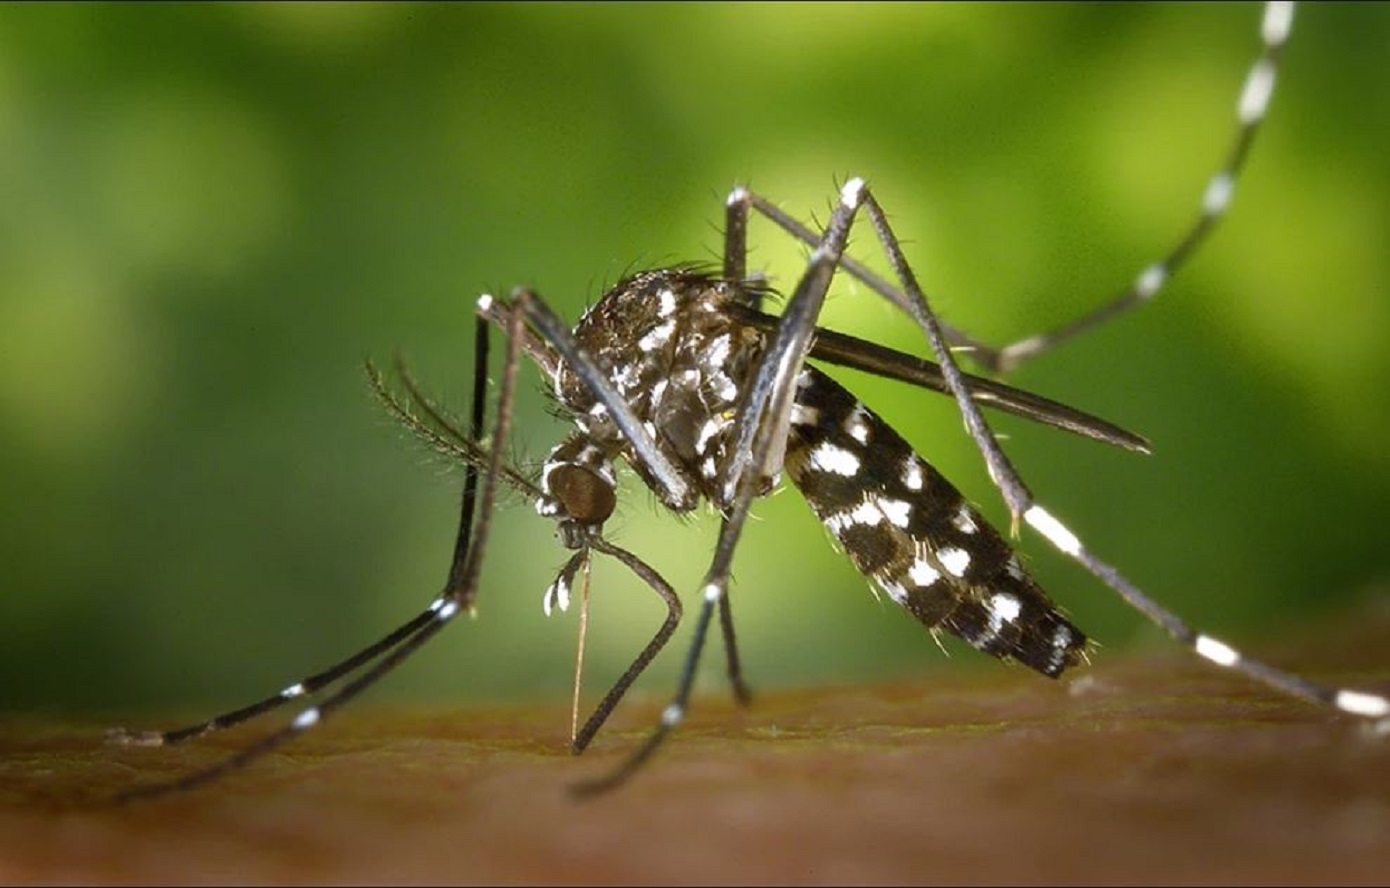 Για σμήνη κουνουπιών λόγω των υψηλών θερμοκρασιών προειδοποιούν οι ειδικοί